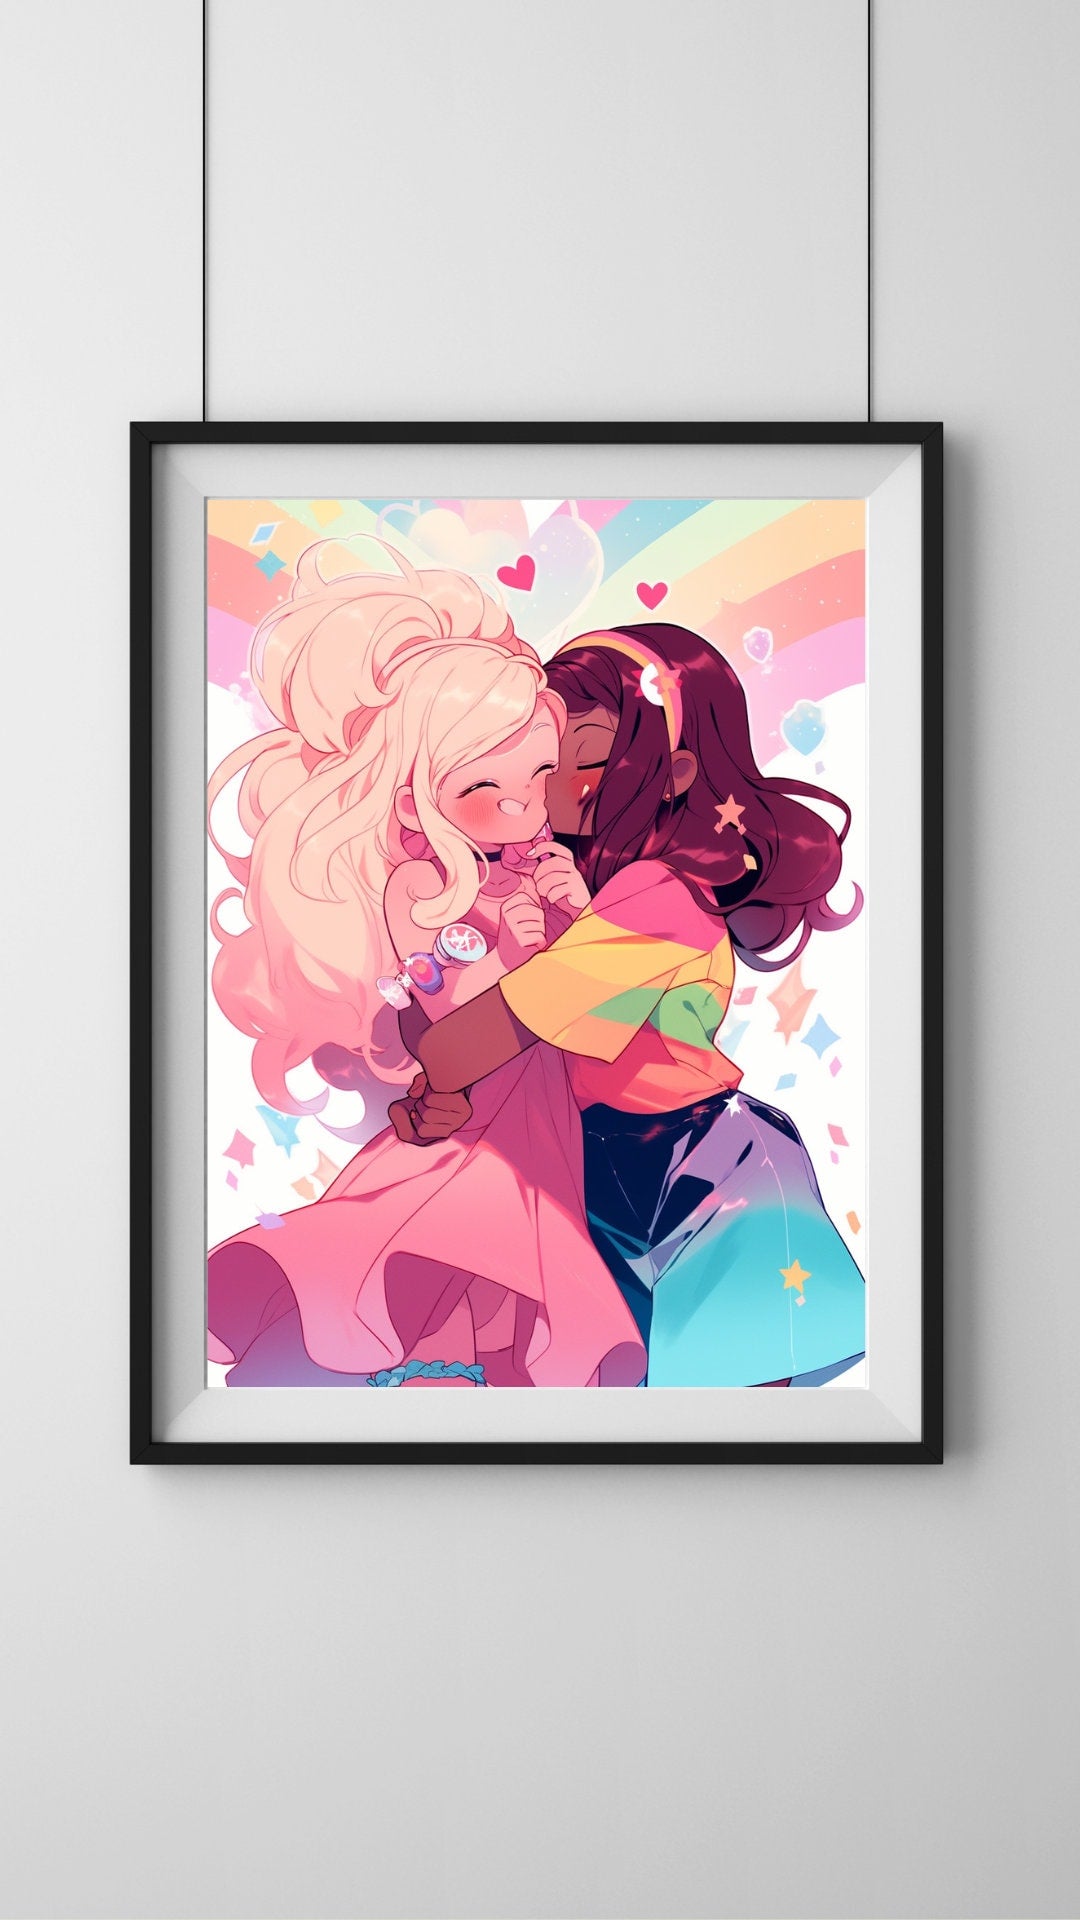 Celebration of Love: The Joyful Embrace Art Print